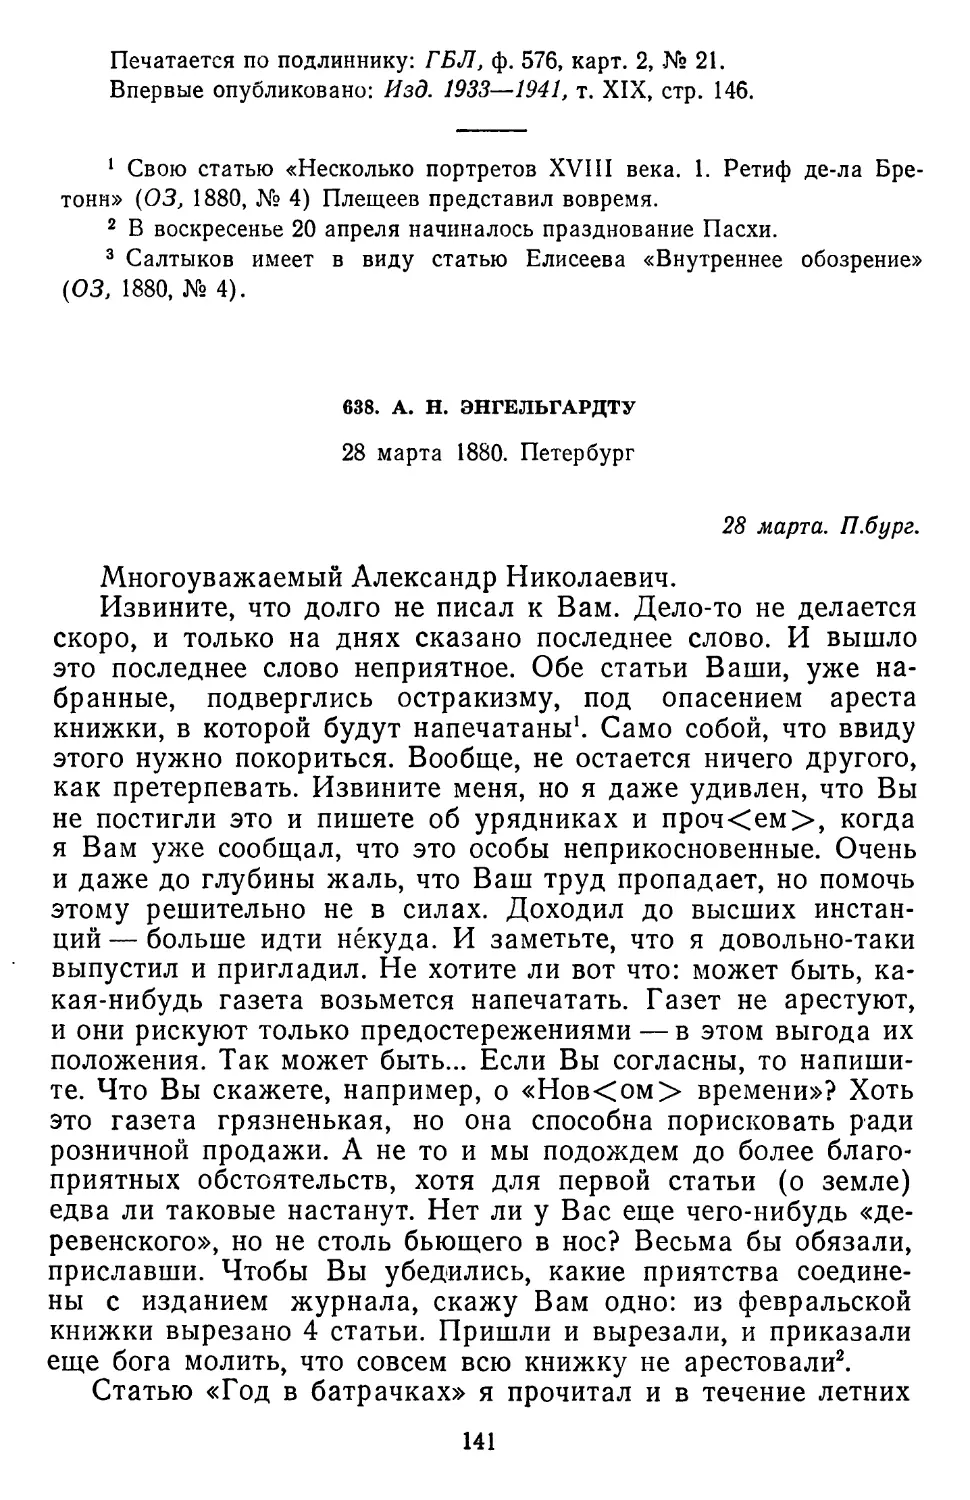 638.А. Н. Энгельгардту. 28 марта 1880. Петербург